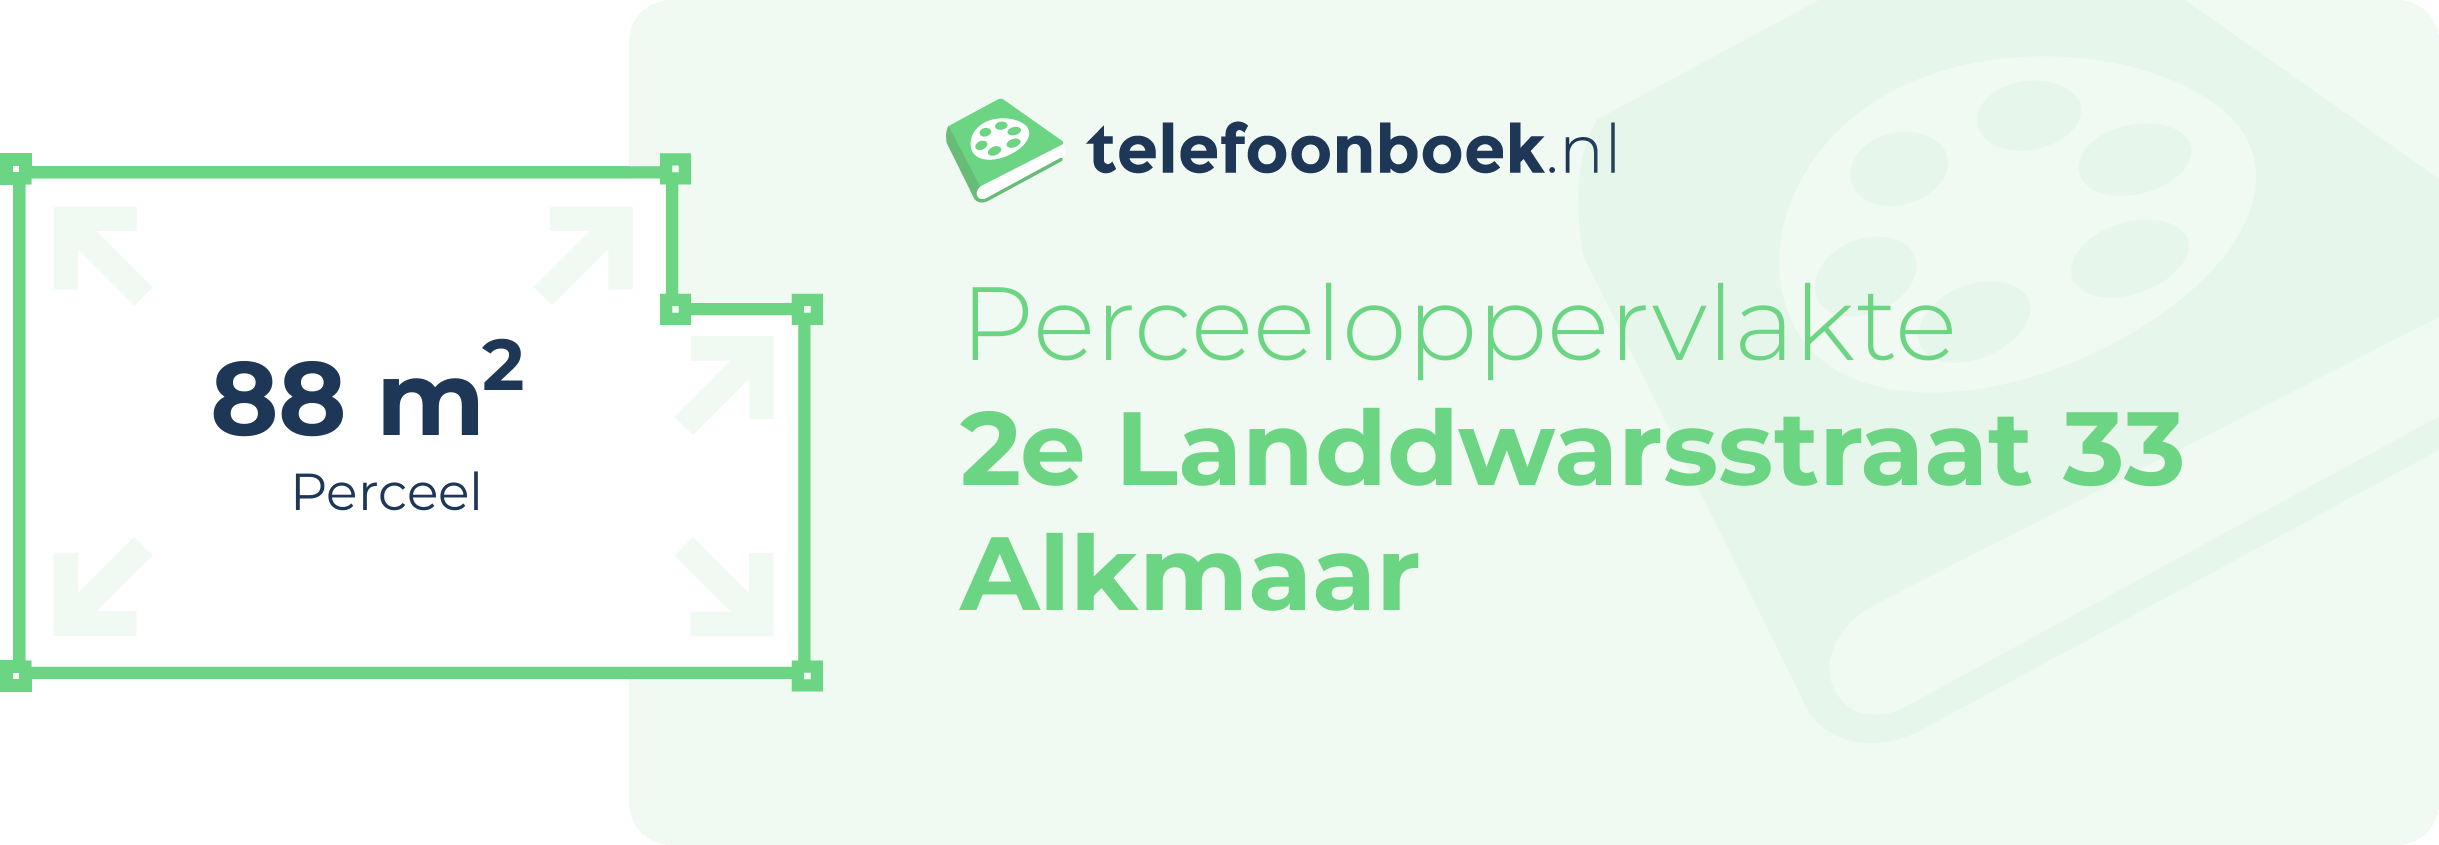 Perceeloppervlakte 2e Landdwarsstraat 33 Alkmaar